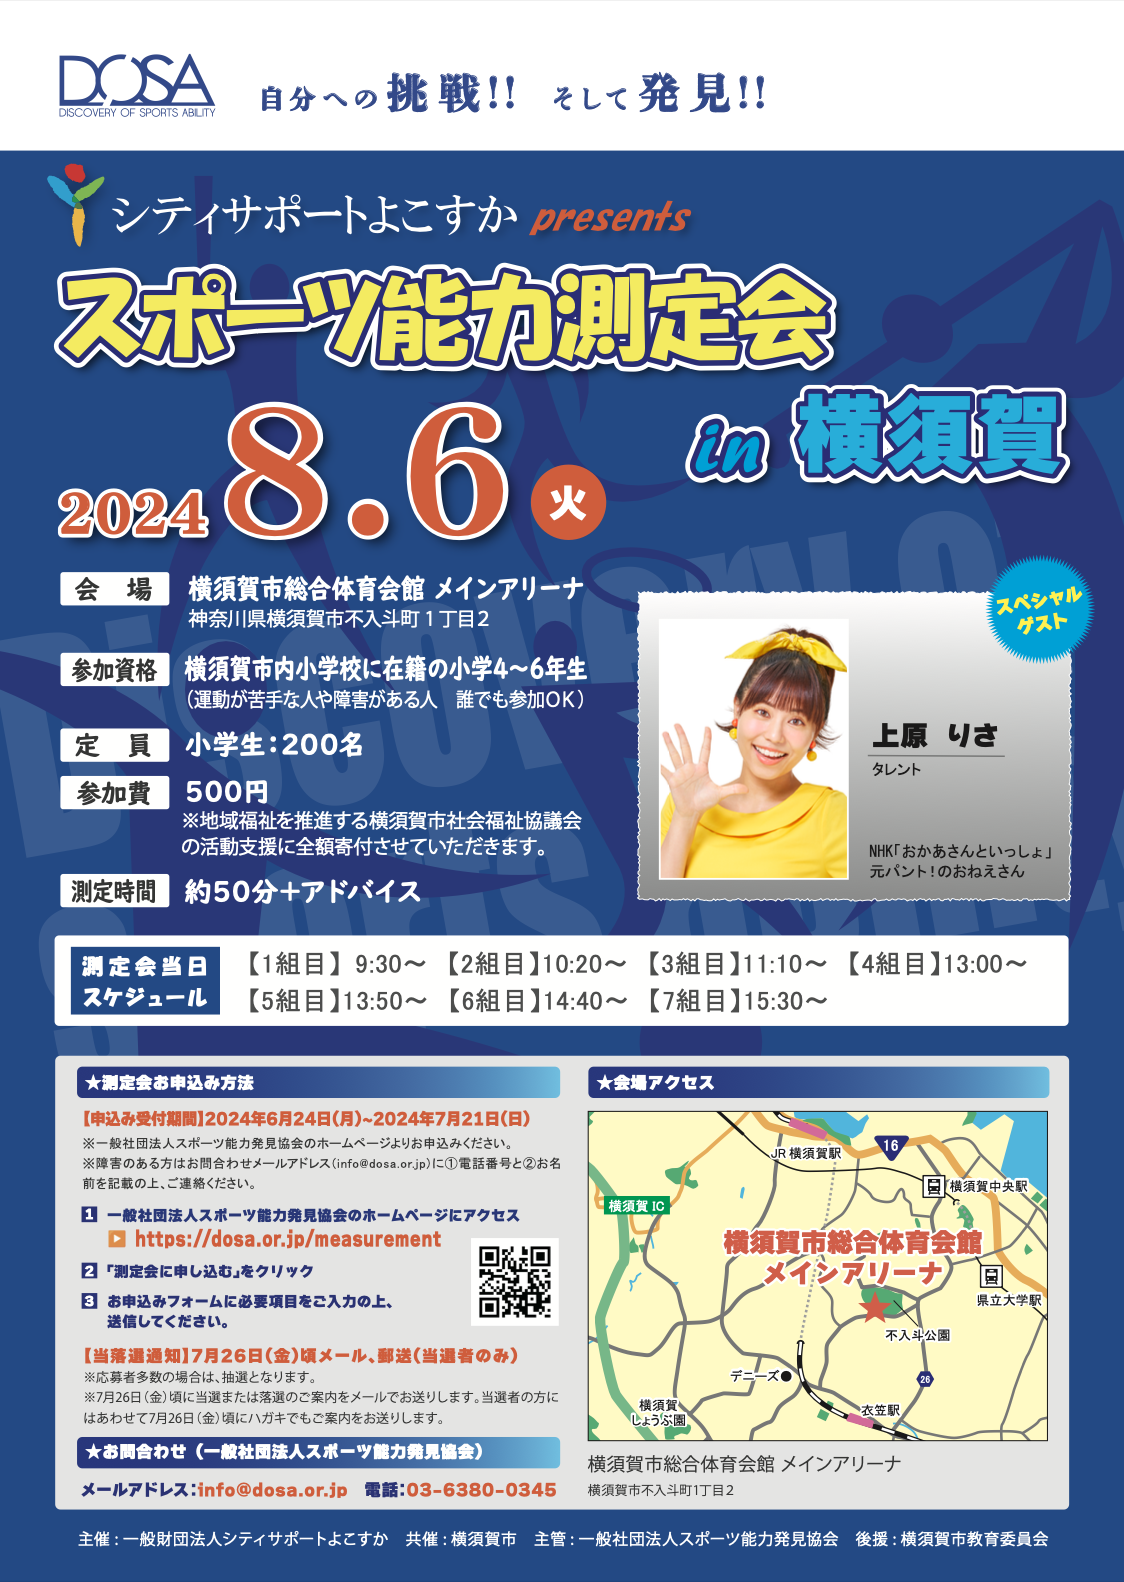 スポーツ能力測定会 in 横須賀を開催します！